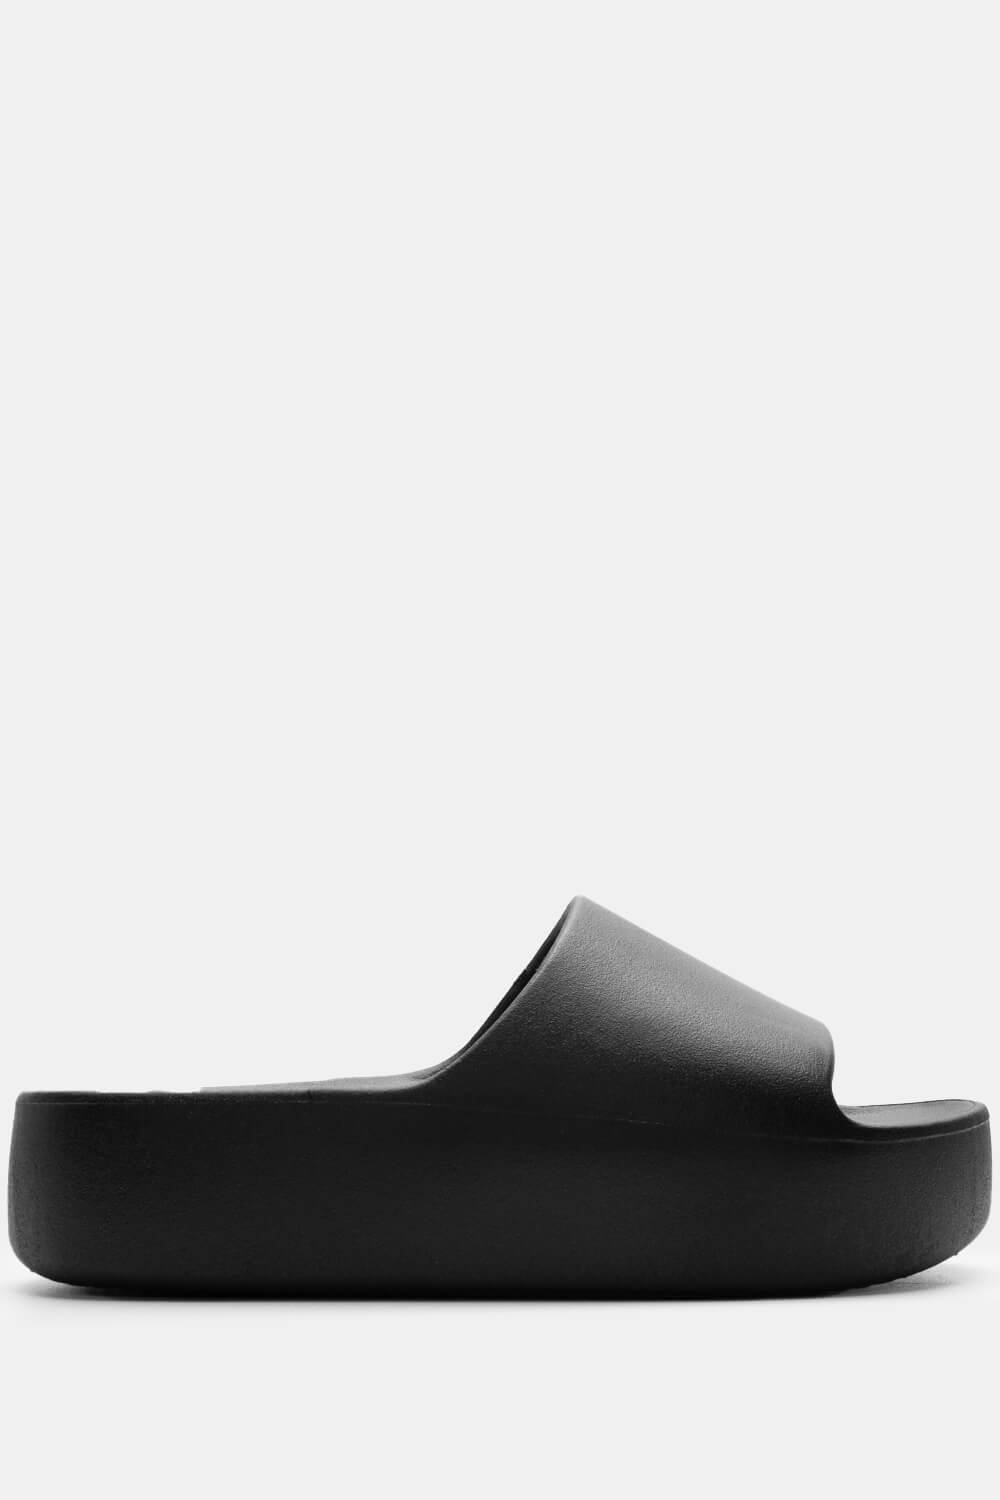 ΠΑΠΟΥΤΣΙΑ > Plastic Sandals Παντόφλες Δίσολες Μονόχρωμες - Μαύρο